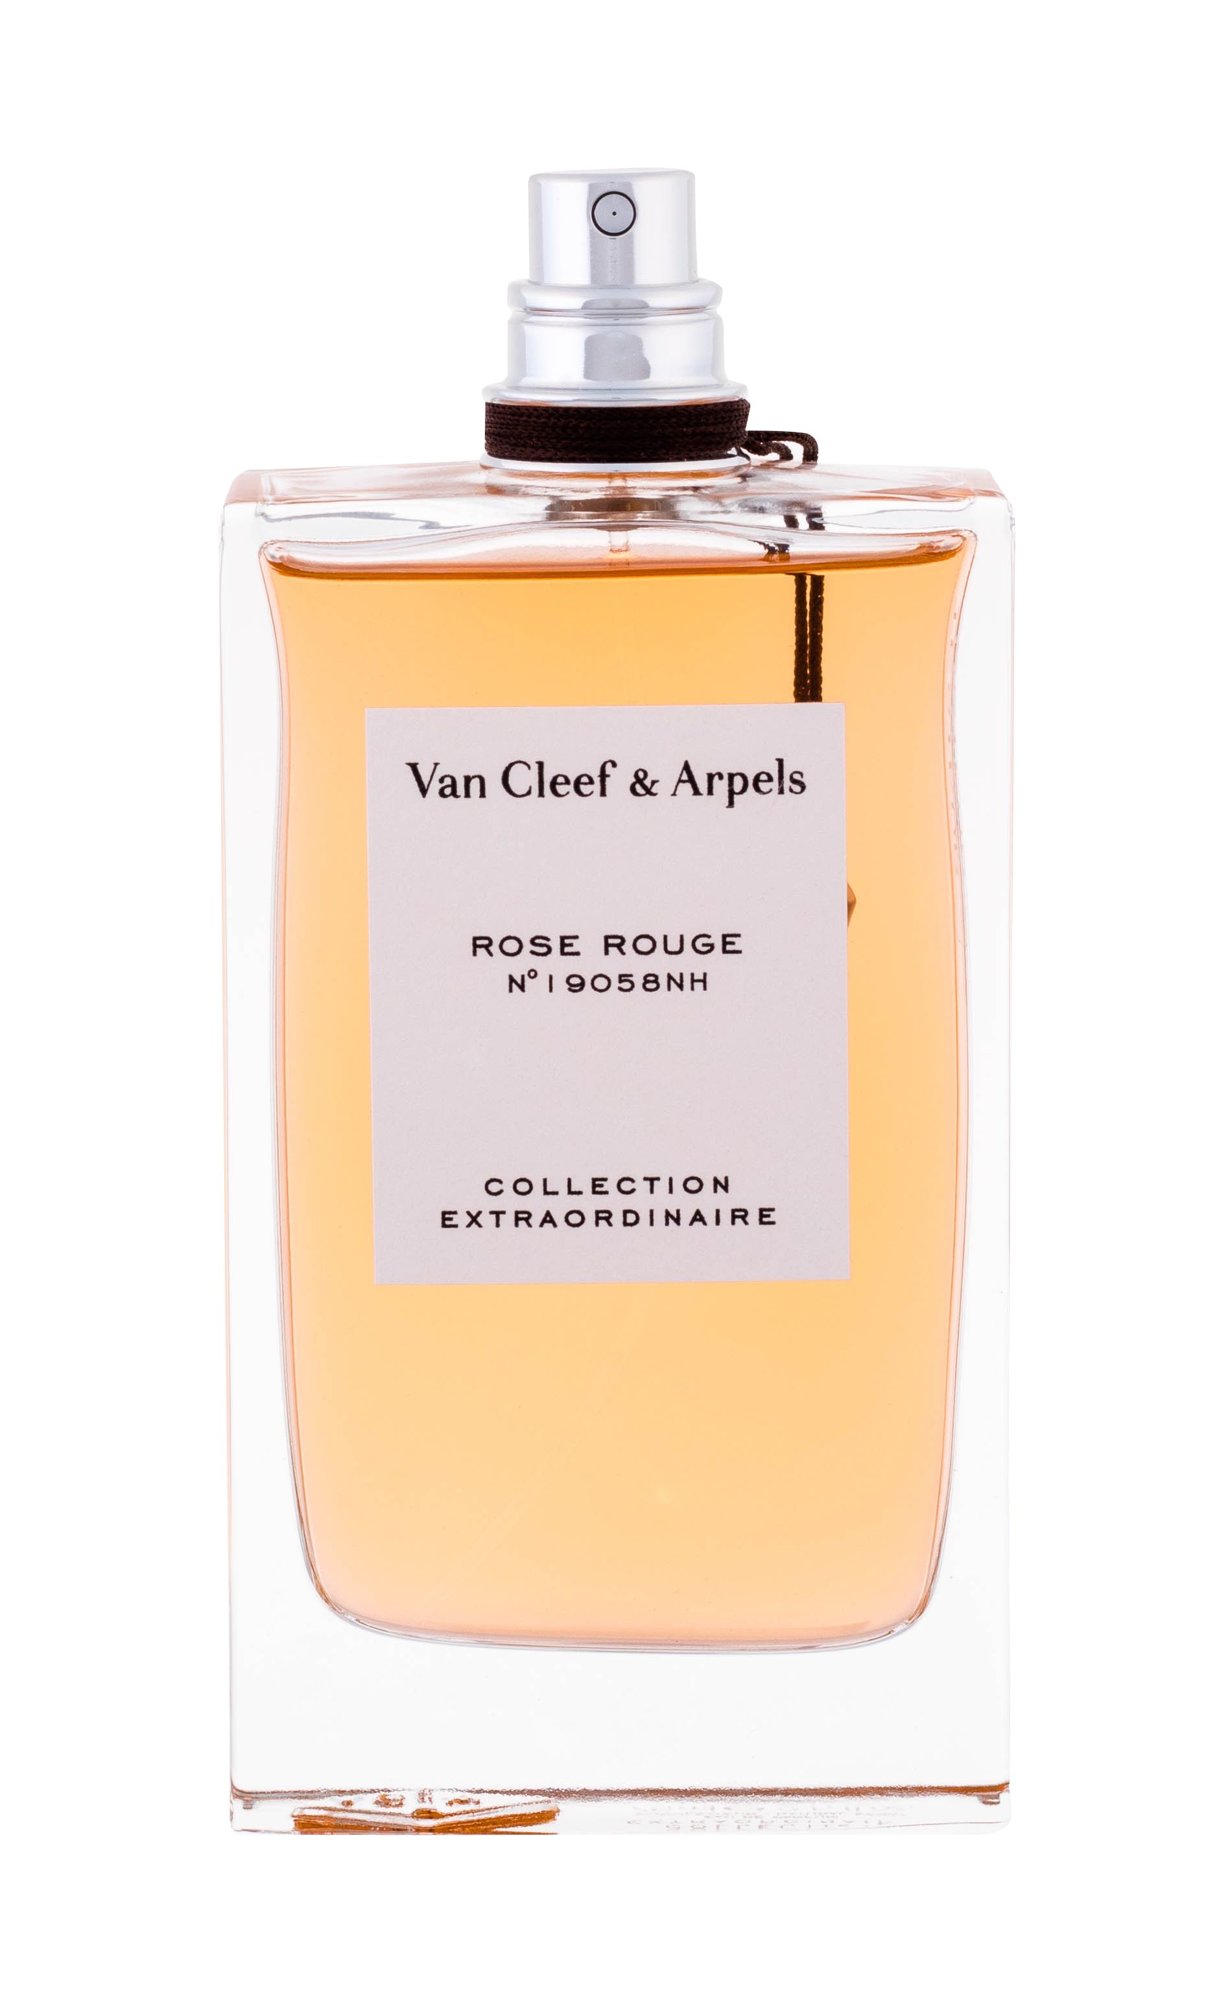 Van Cleef & Arpels Collection Extraordinaire Rose Rouge, edp 75ml - Teszter